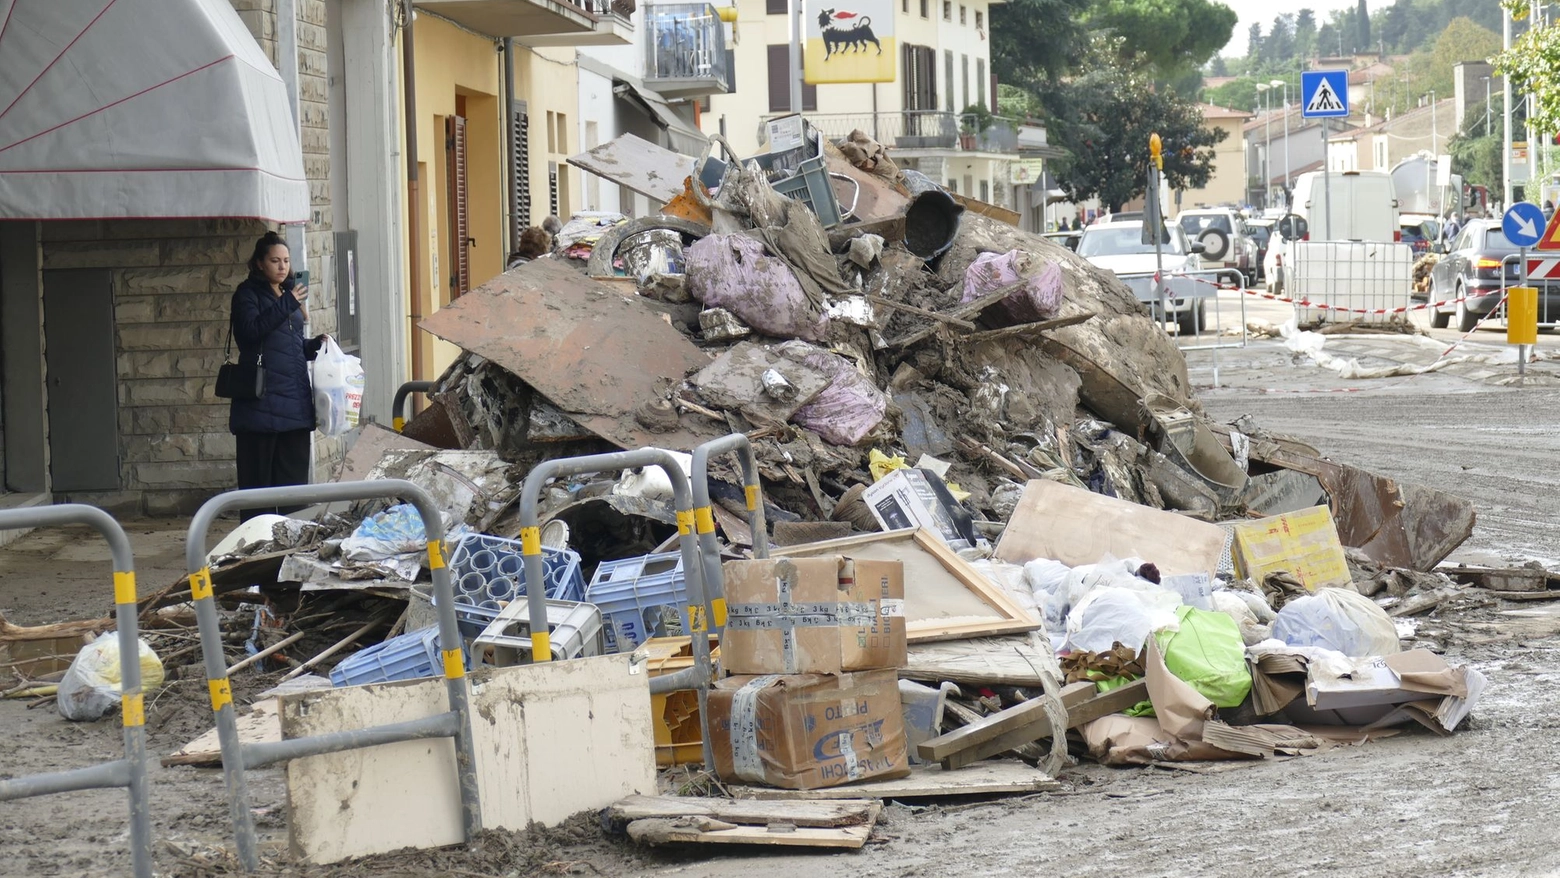 Cumuli di rifiuti in strada (foto Attalmi)